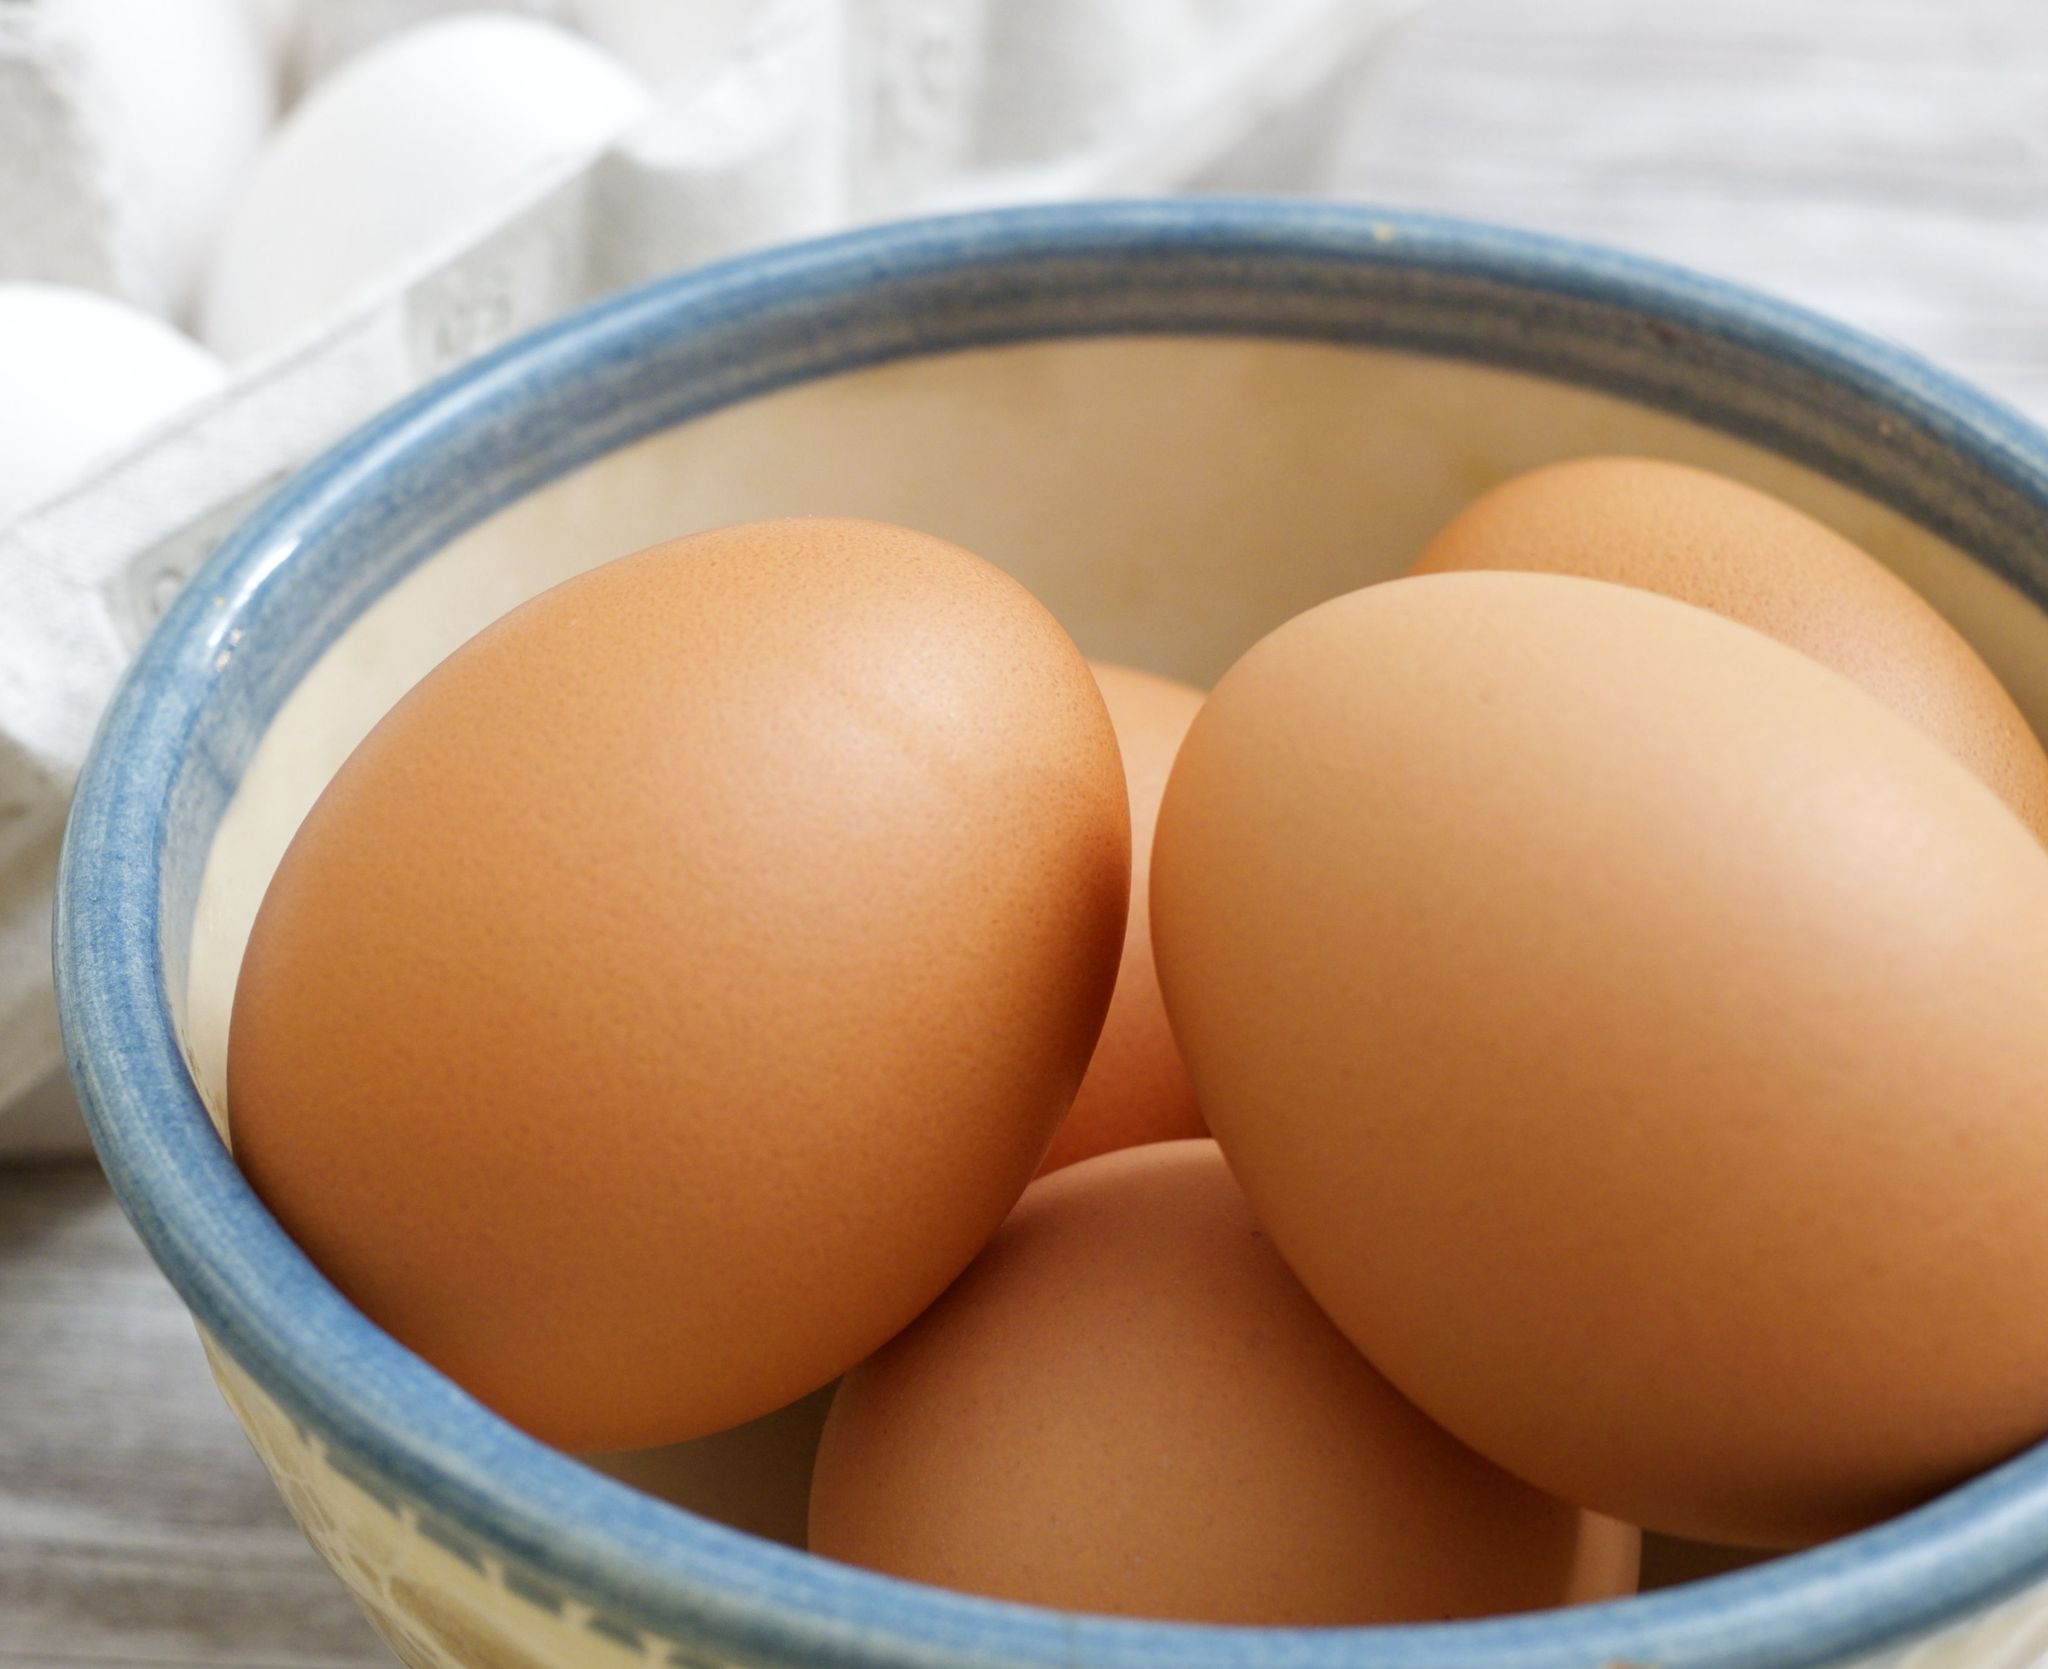 Cómo usar cocedor de huevos para microonda? - AliExpress